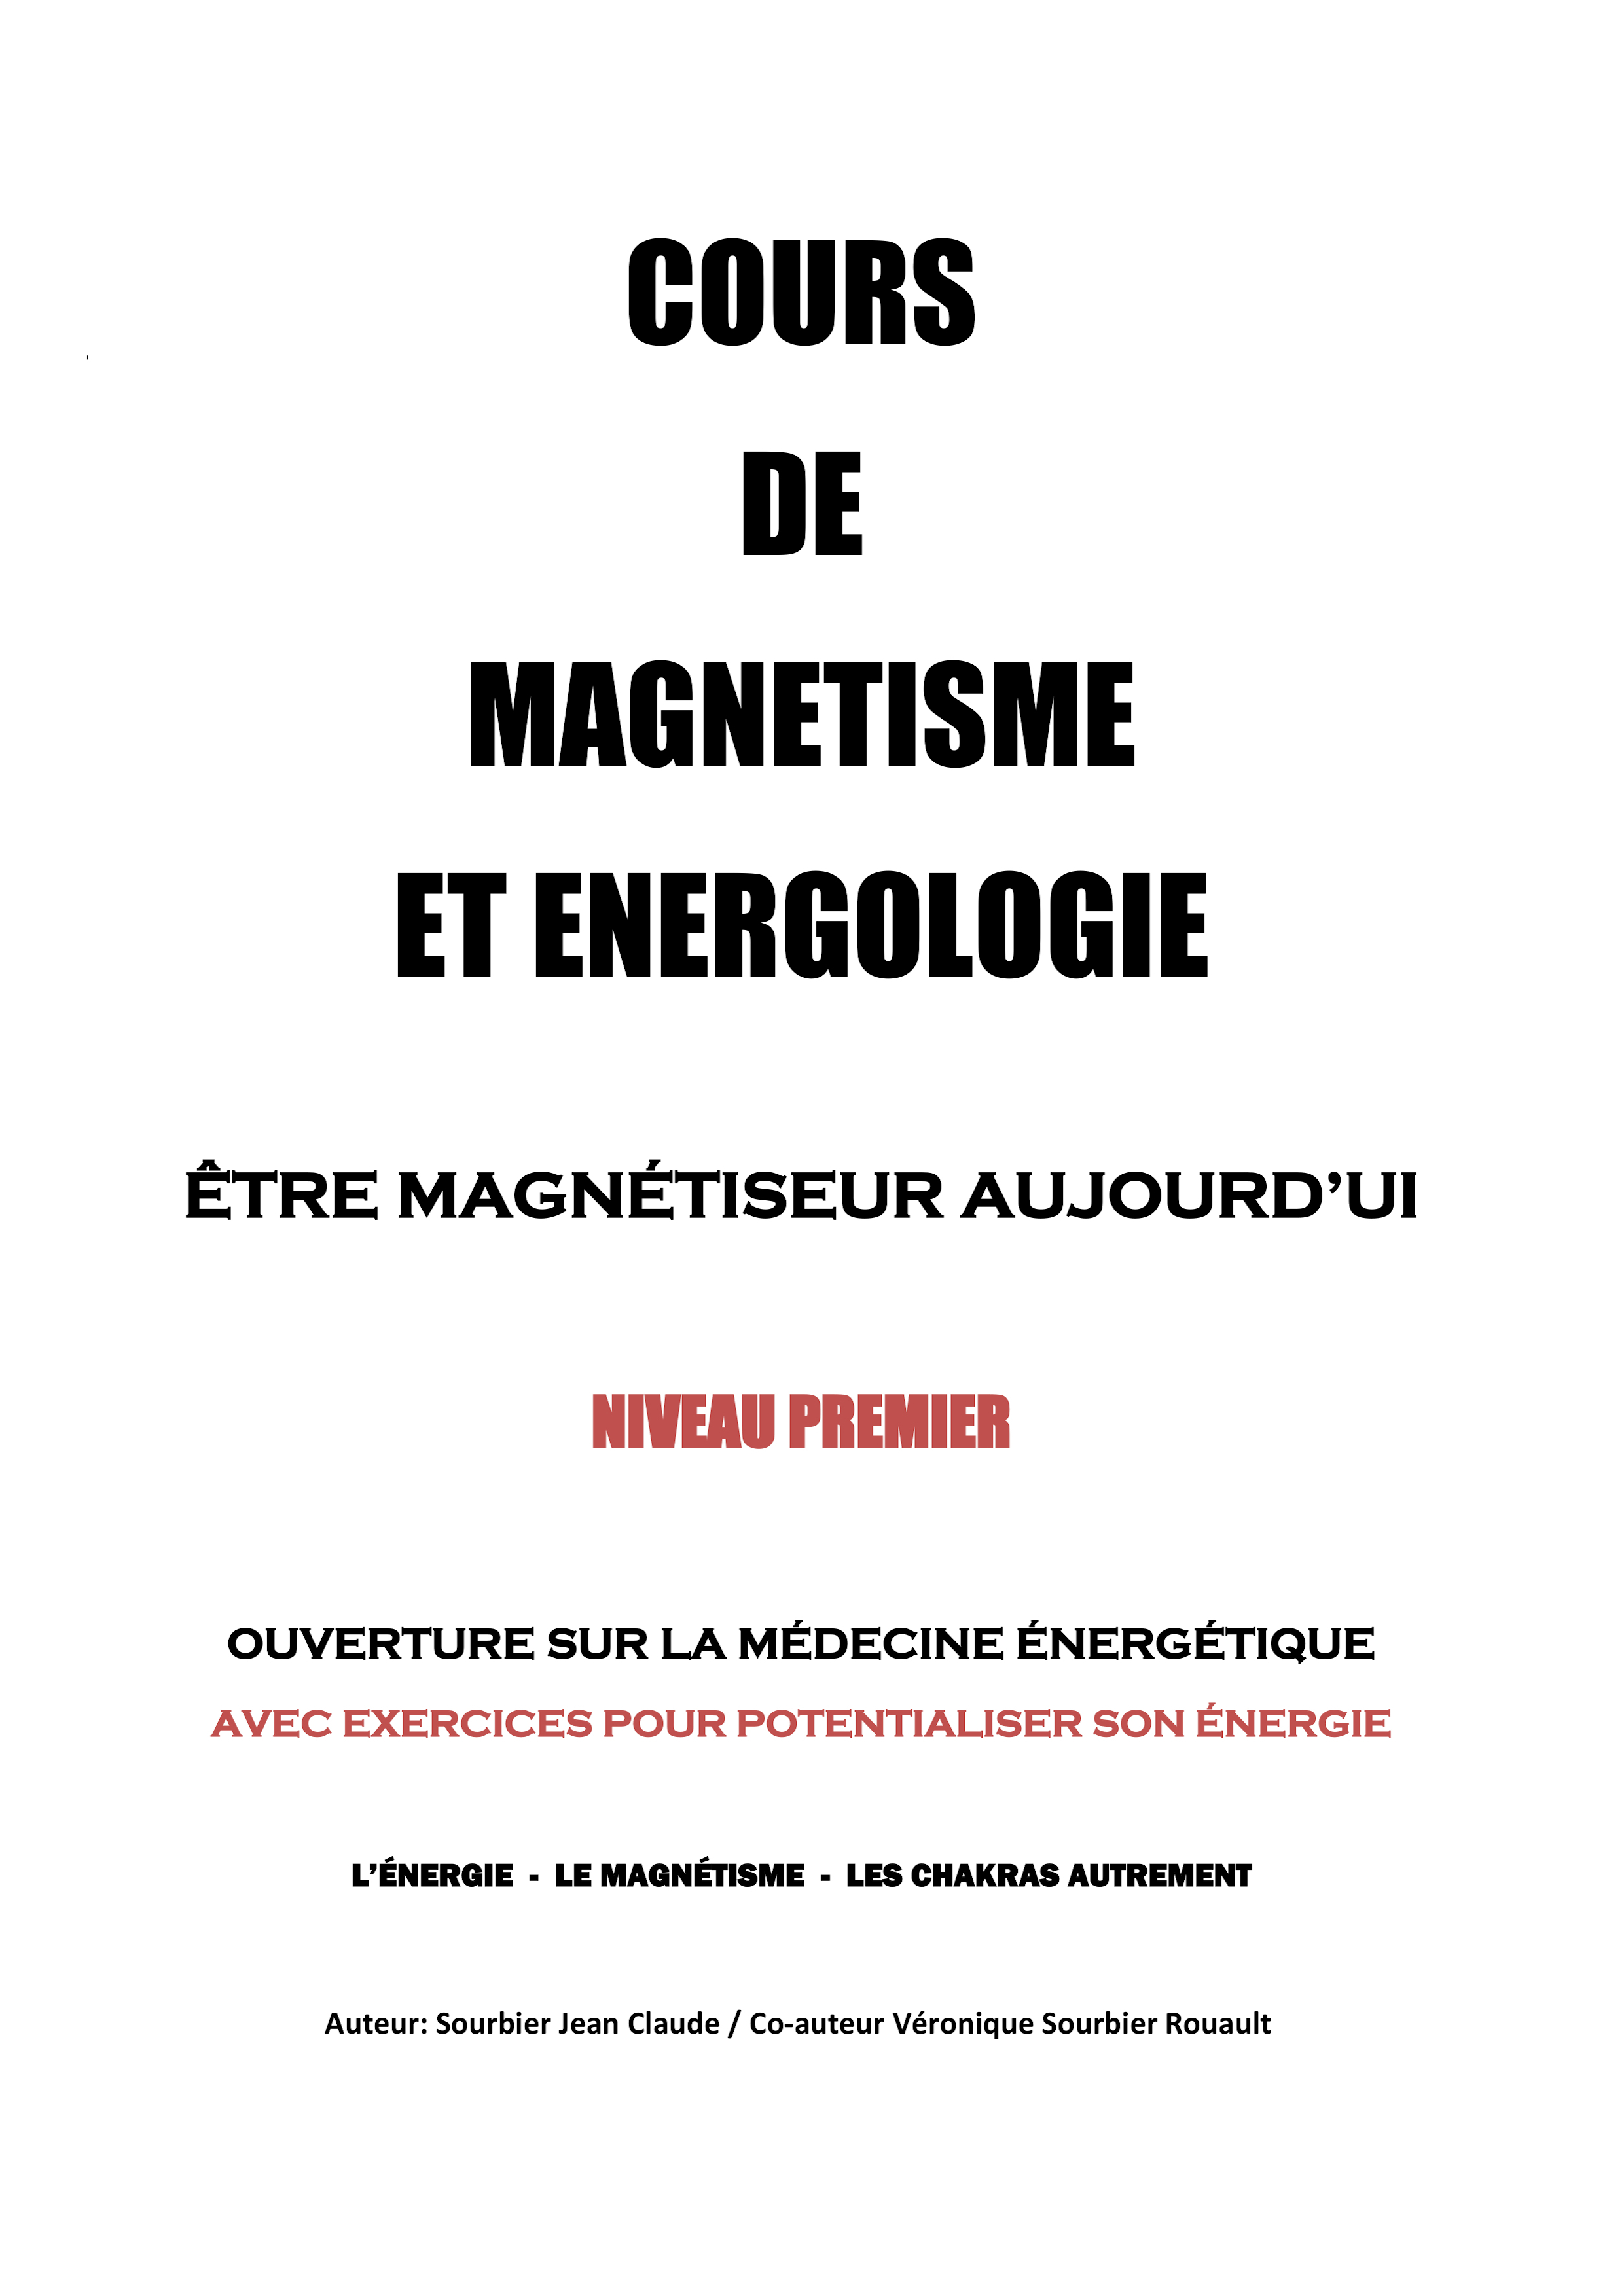 COURS DE MAGNETISME ET ENERGOLOGIE - SOURBIER Jean claude